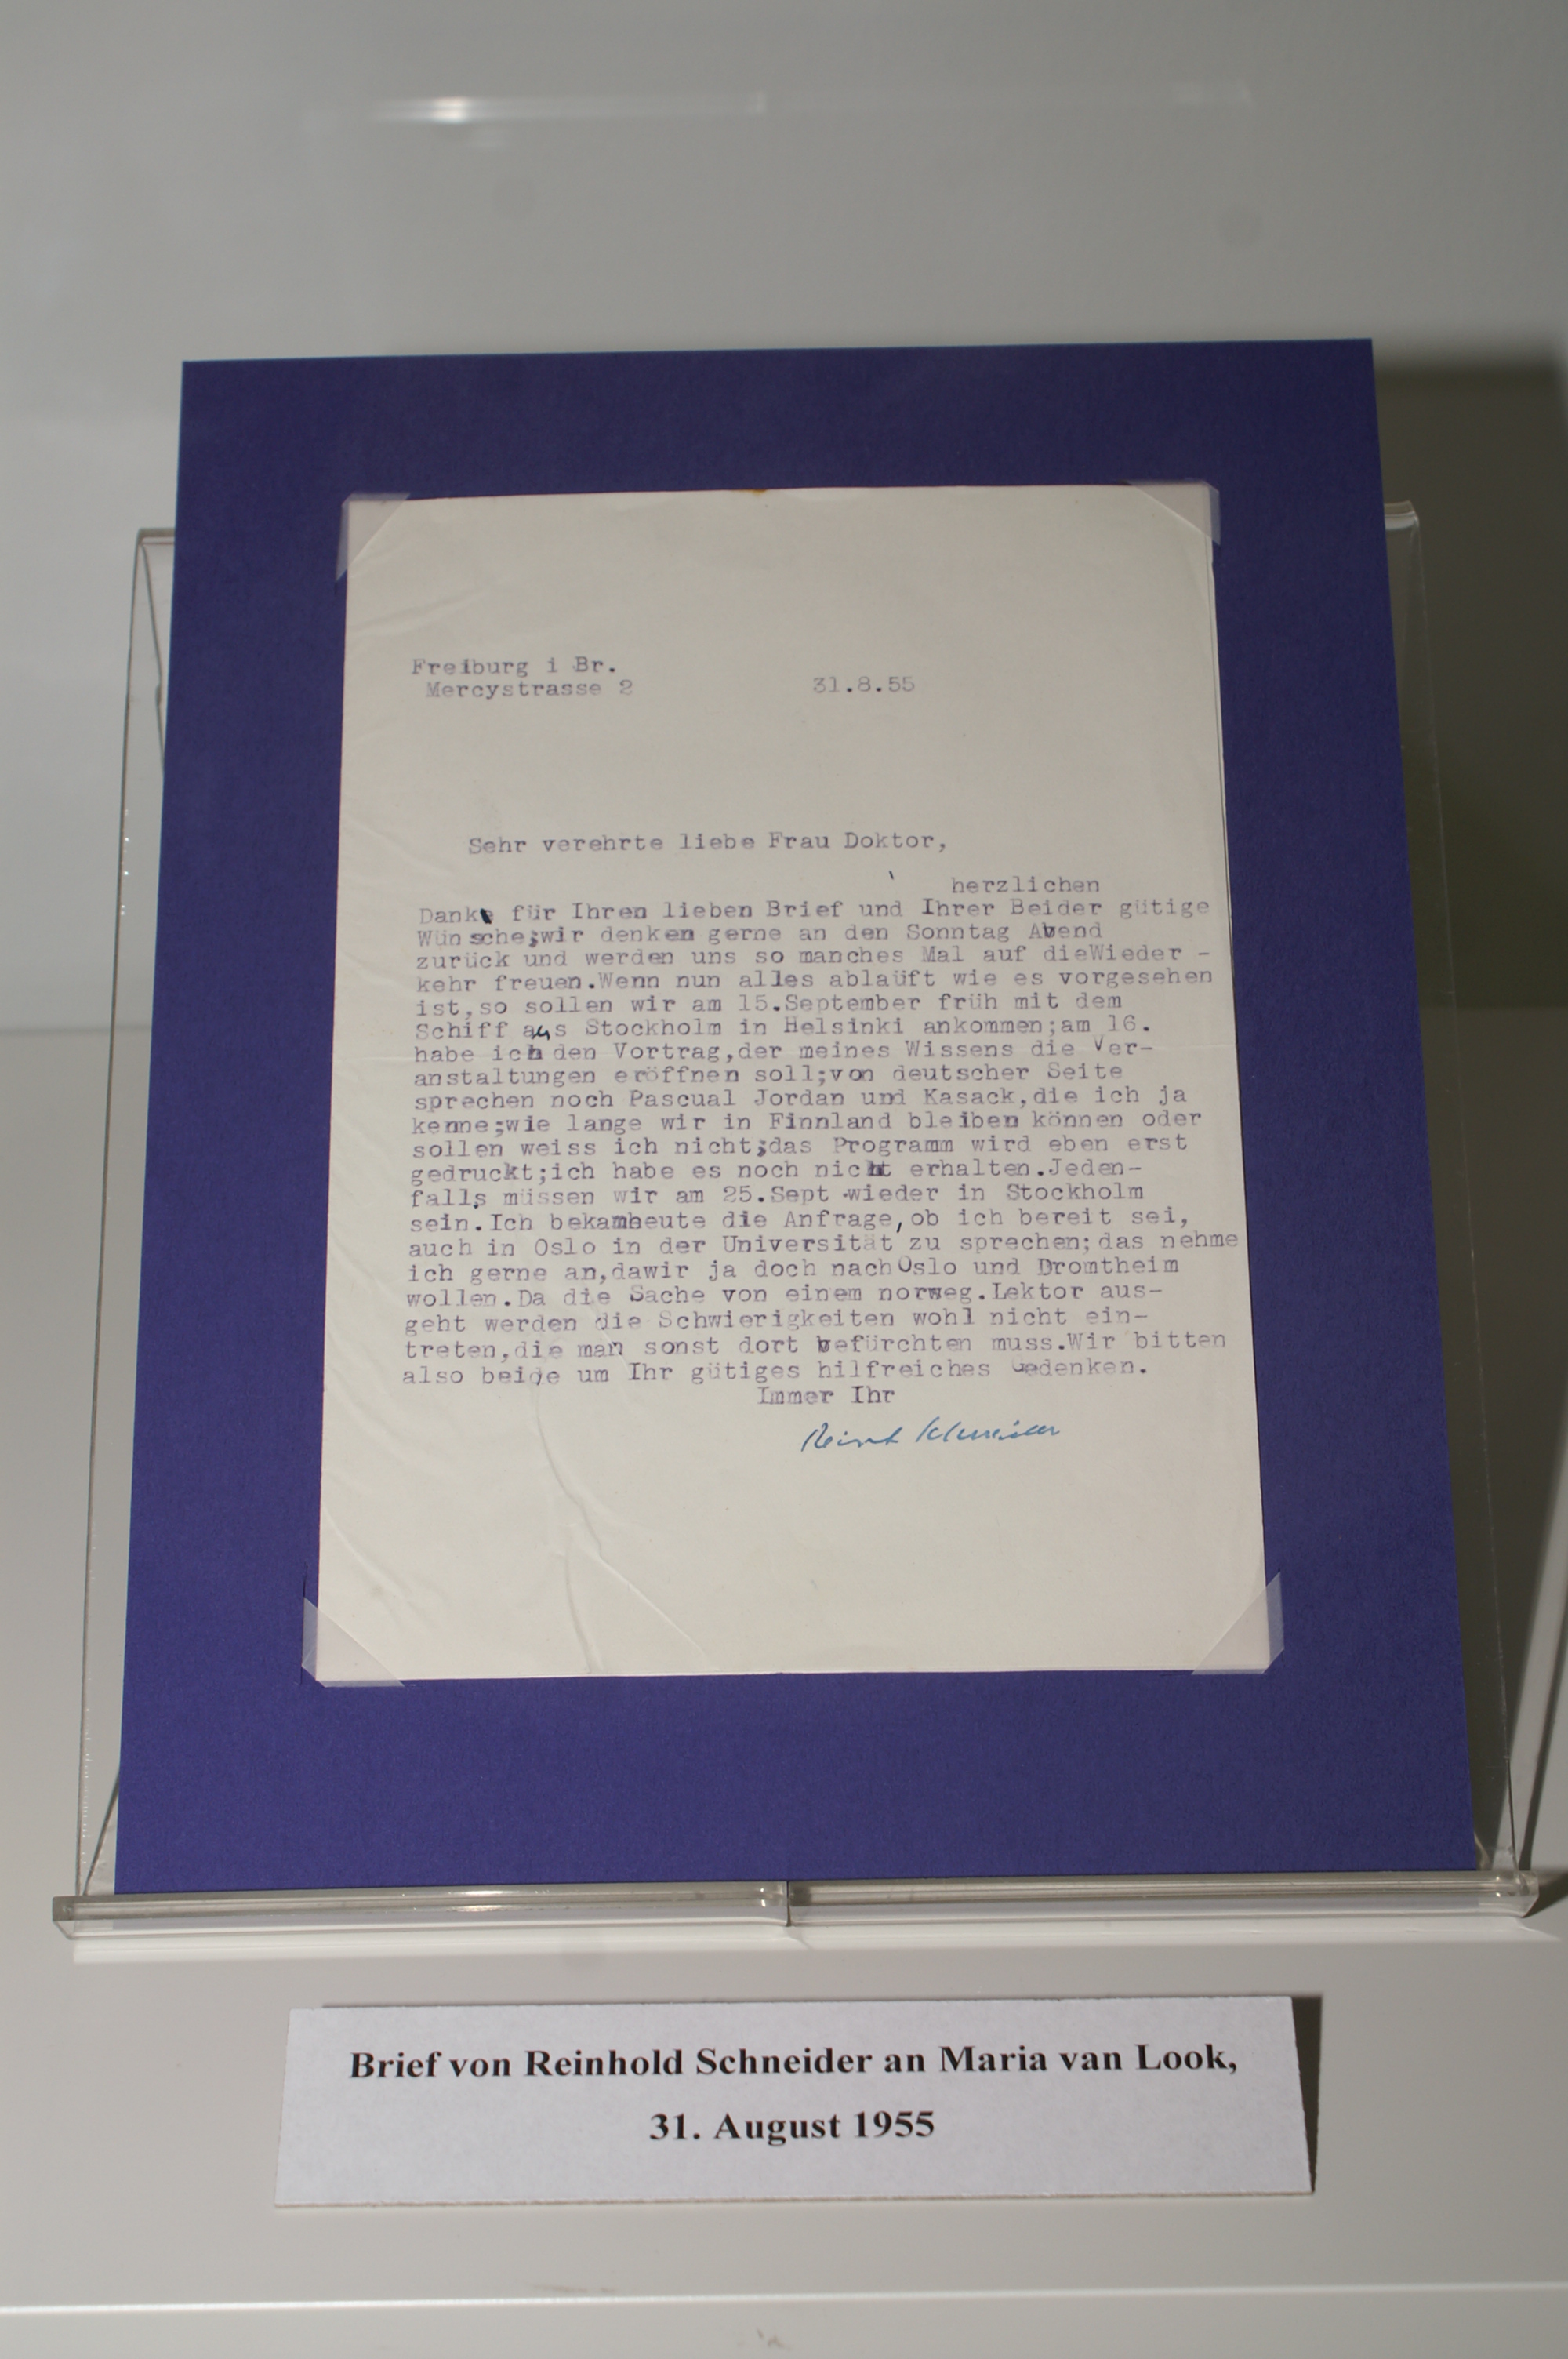 Brief von Reinhold Schneider aufgezogen auf blauer Pappe.